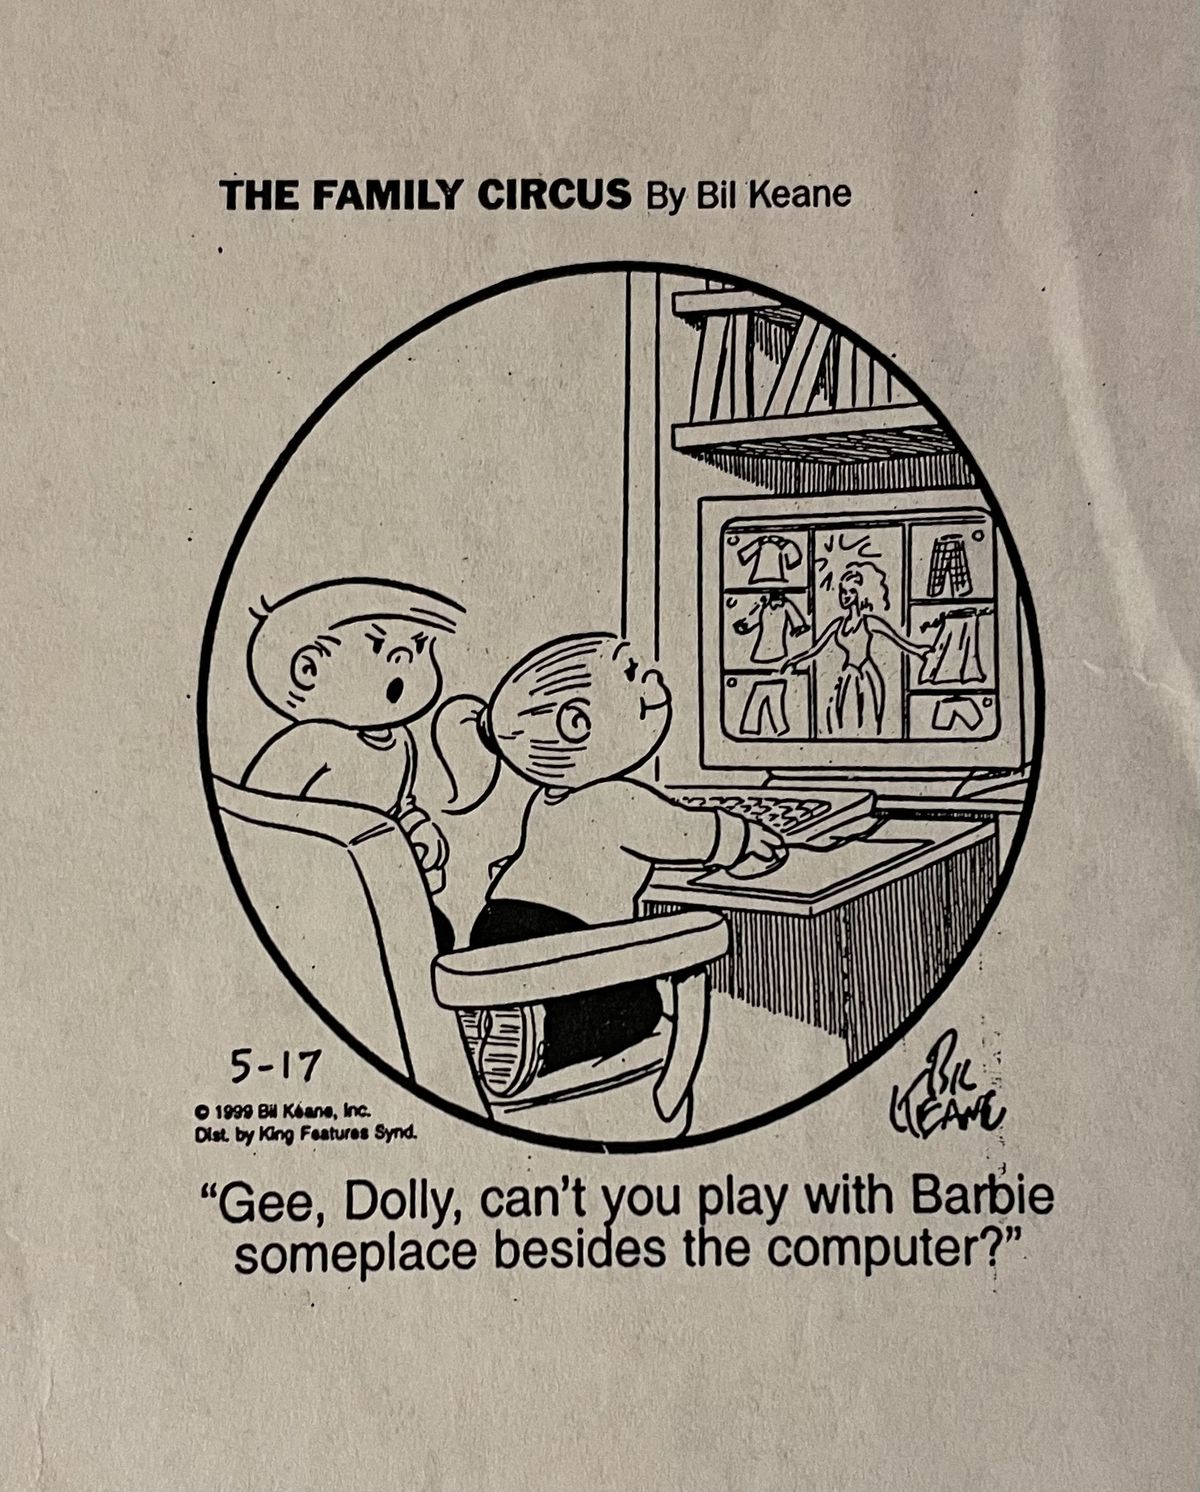 漫画『ファミリー・サーカス』の切り抜き。 小さな女の子がデスクトップ コンピュータでゲームをプレイしていると、怒ったような表情の少年が「ねえ、ドリー、コンピュータ以外のどこかでバービー人形と遊べないの?」と尋ねます。